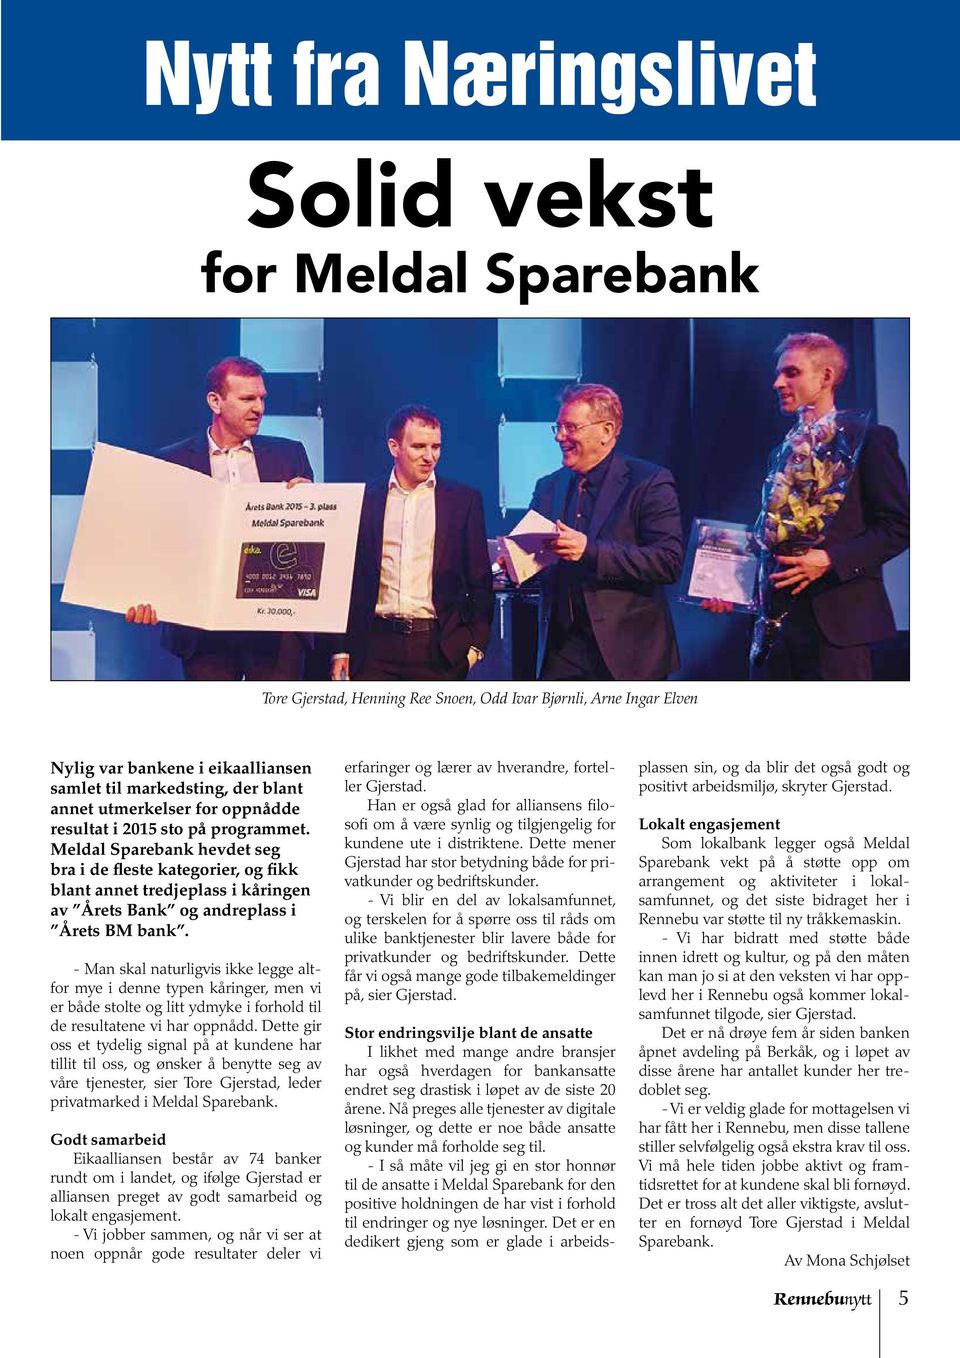 Meldal Sparebank hevdet seg bra i de fleste kategorier, og fikk blant annet tredjeplass i kåringen av Årets Bank og andreplass i Årets BM bank.